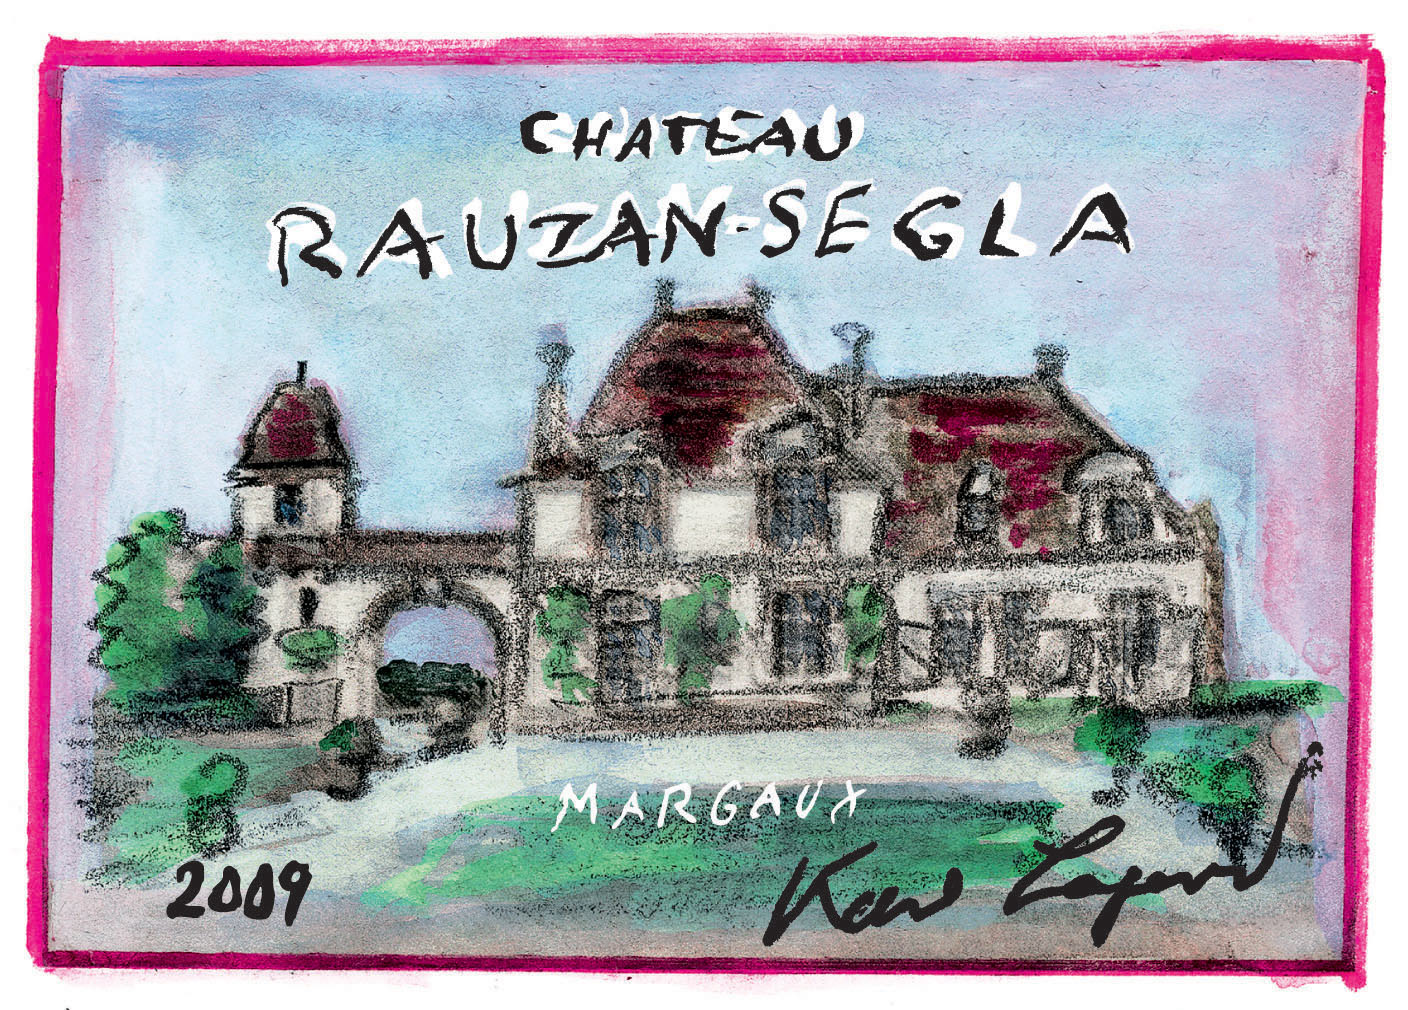 Chateau Rauzan-Segla label